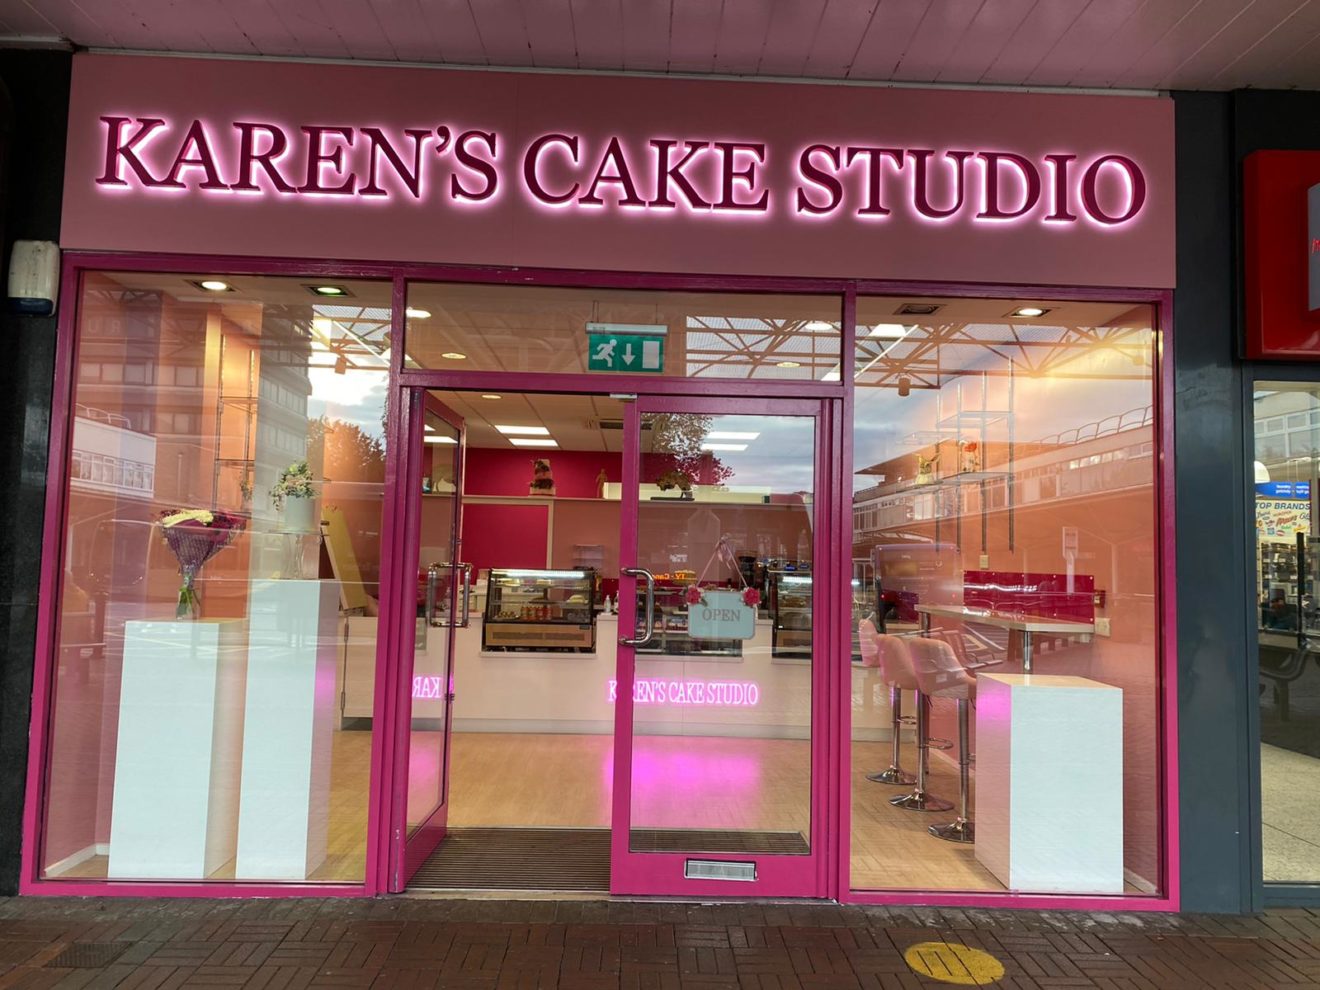 Karen's Cake Studio project undertaken by OLLYWOOD™